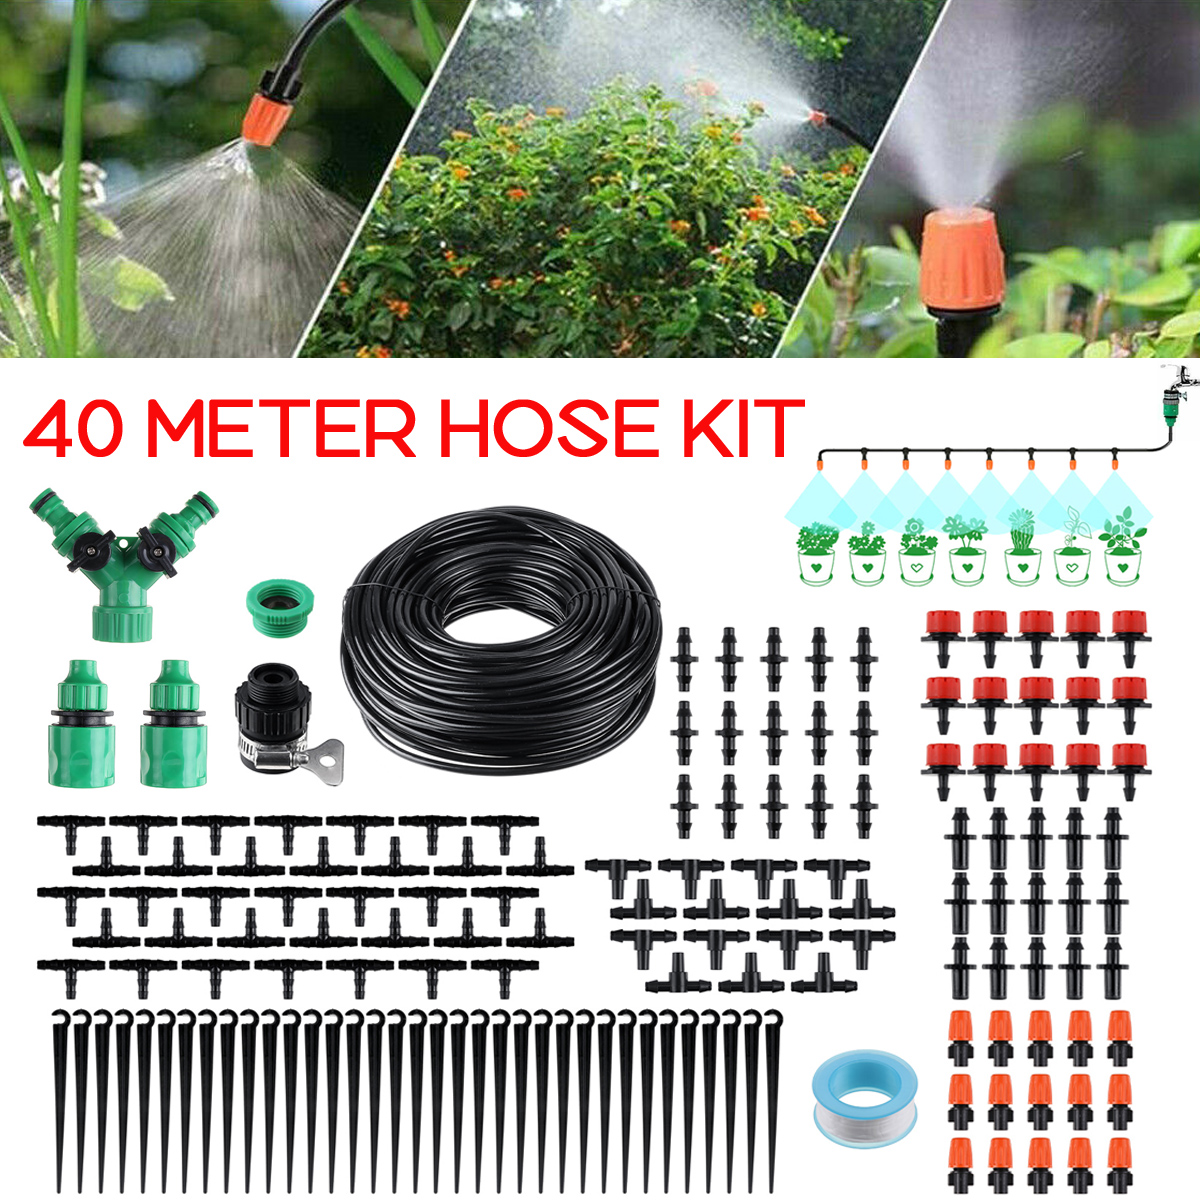 10 M Micro Irrigation Goutte à Goutte Système plante automatique auto Arrosage Jardin Tuyau Kits